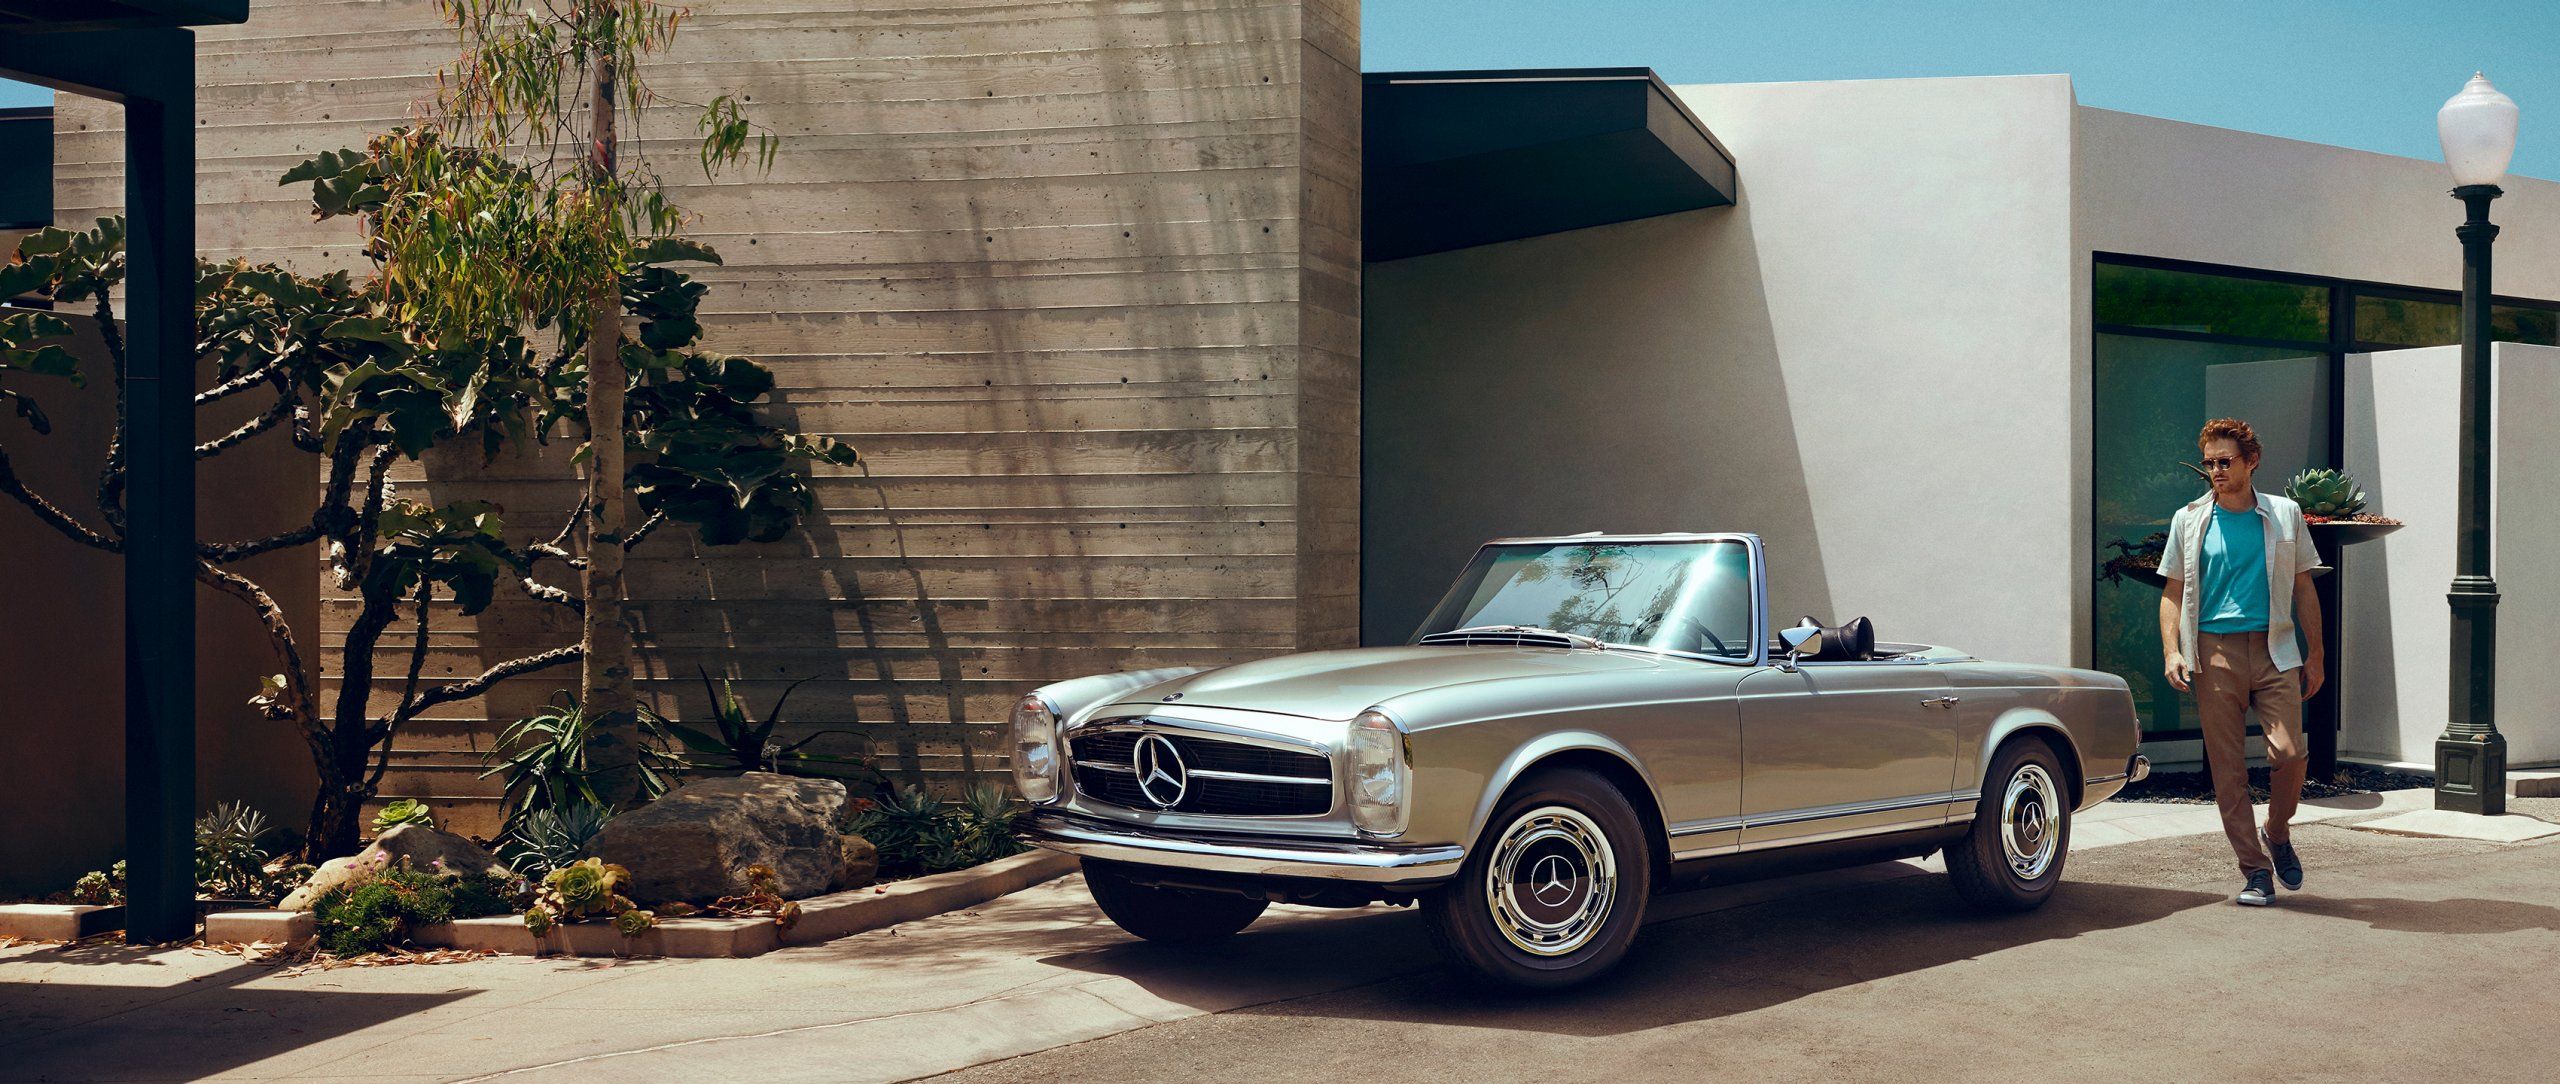 Mercedes Benz Classic: Classics, Festivals And Milestones